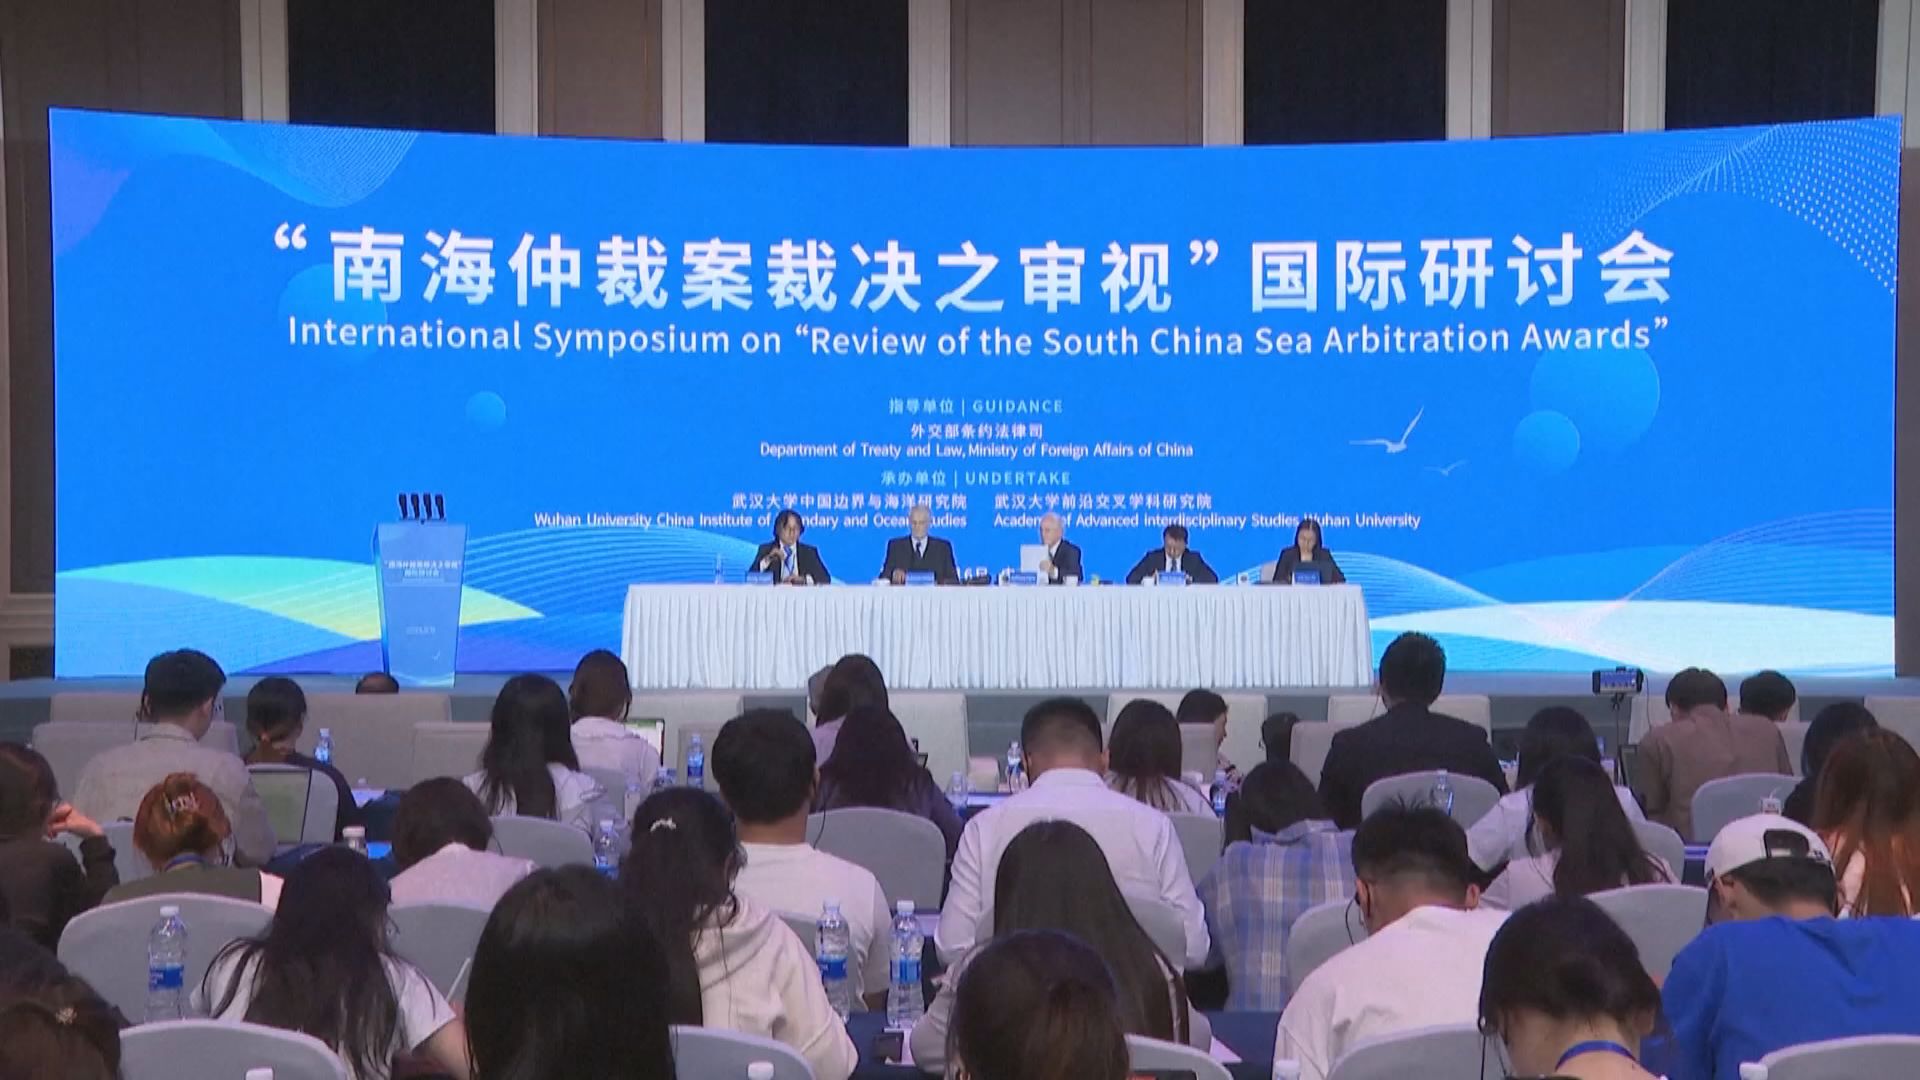 中國說遠海群島的習慣國際法不牴觸聯合國海洋法公約